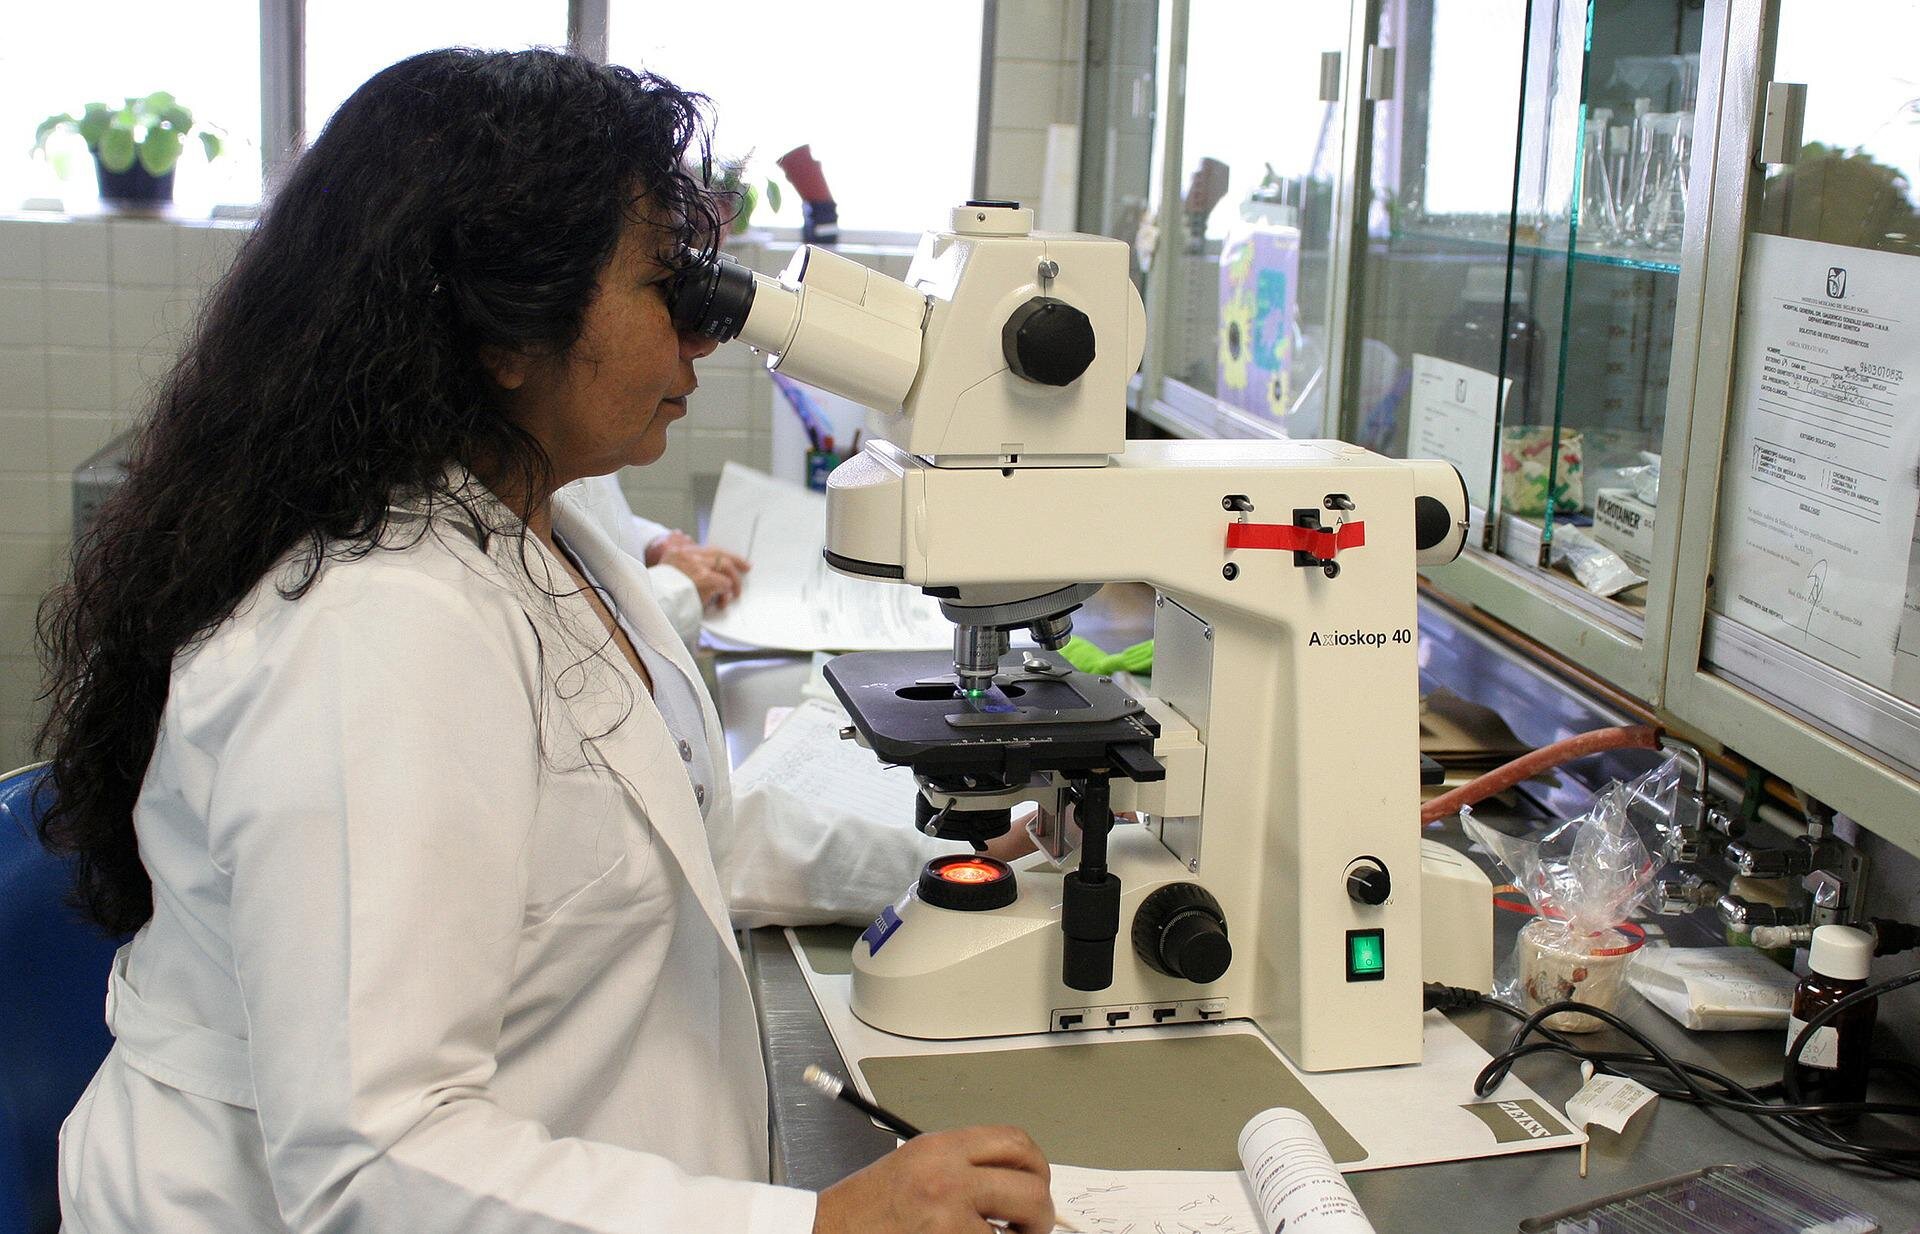 Das Forschungsteam löst ein jahrzehntealtes Problem der Mikroskopie